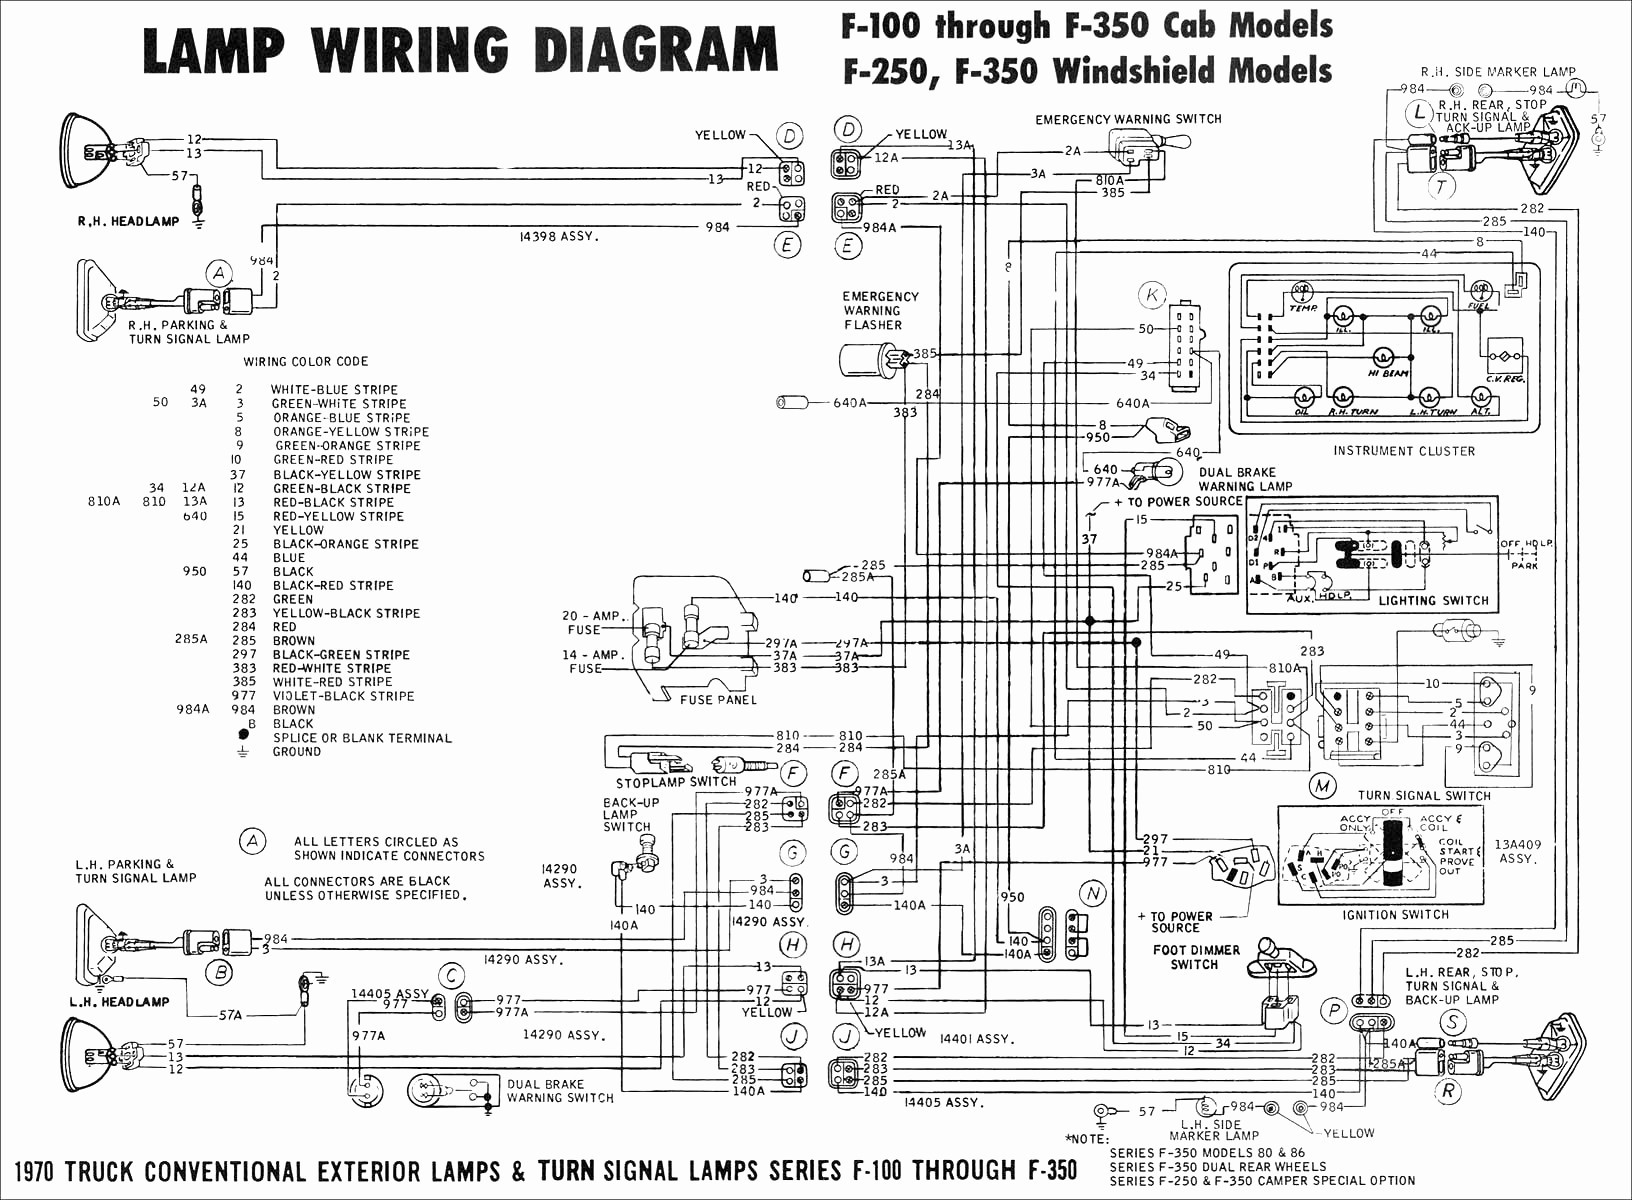 True Tuc 27f Wiring Diagram New Wiring Diagram True Freezer T 49f Wiring Diagram New Free